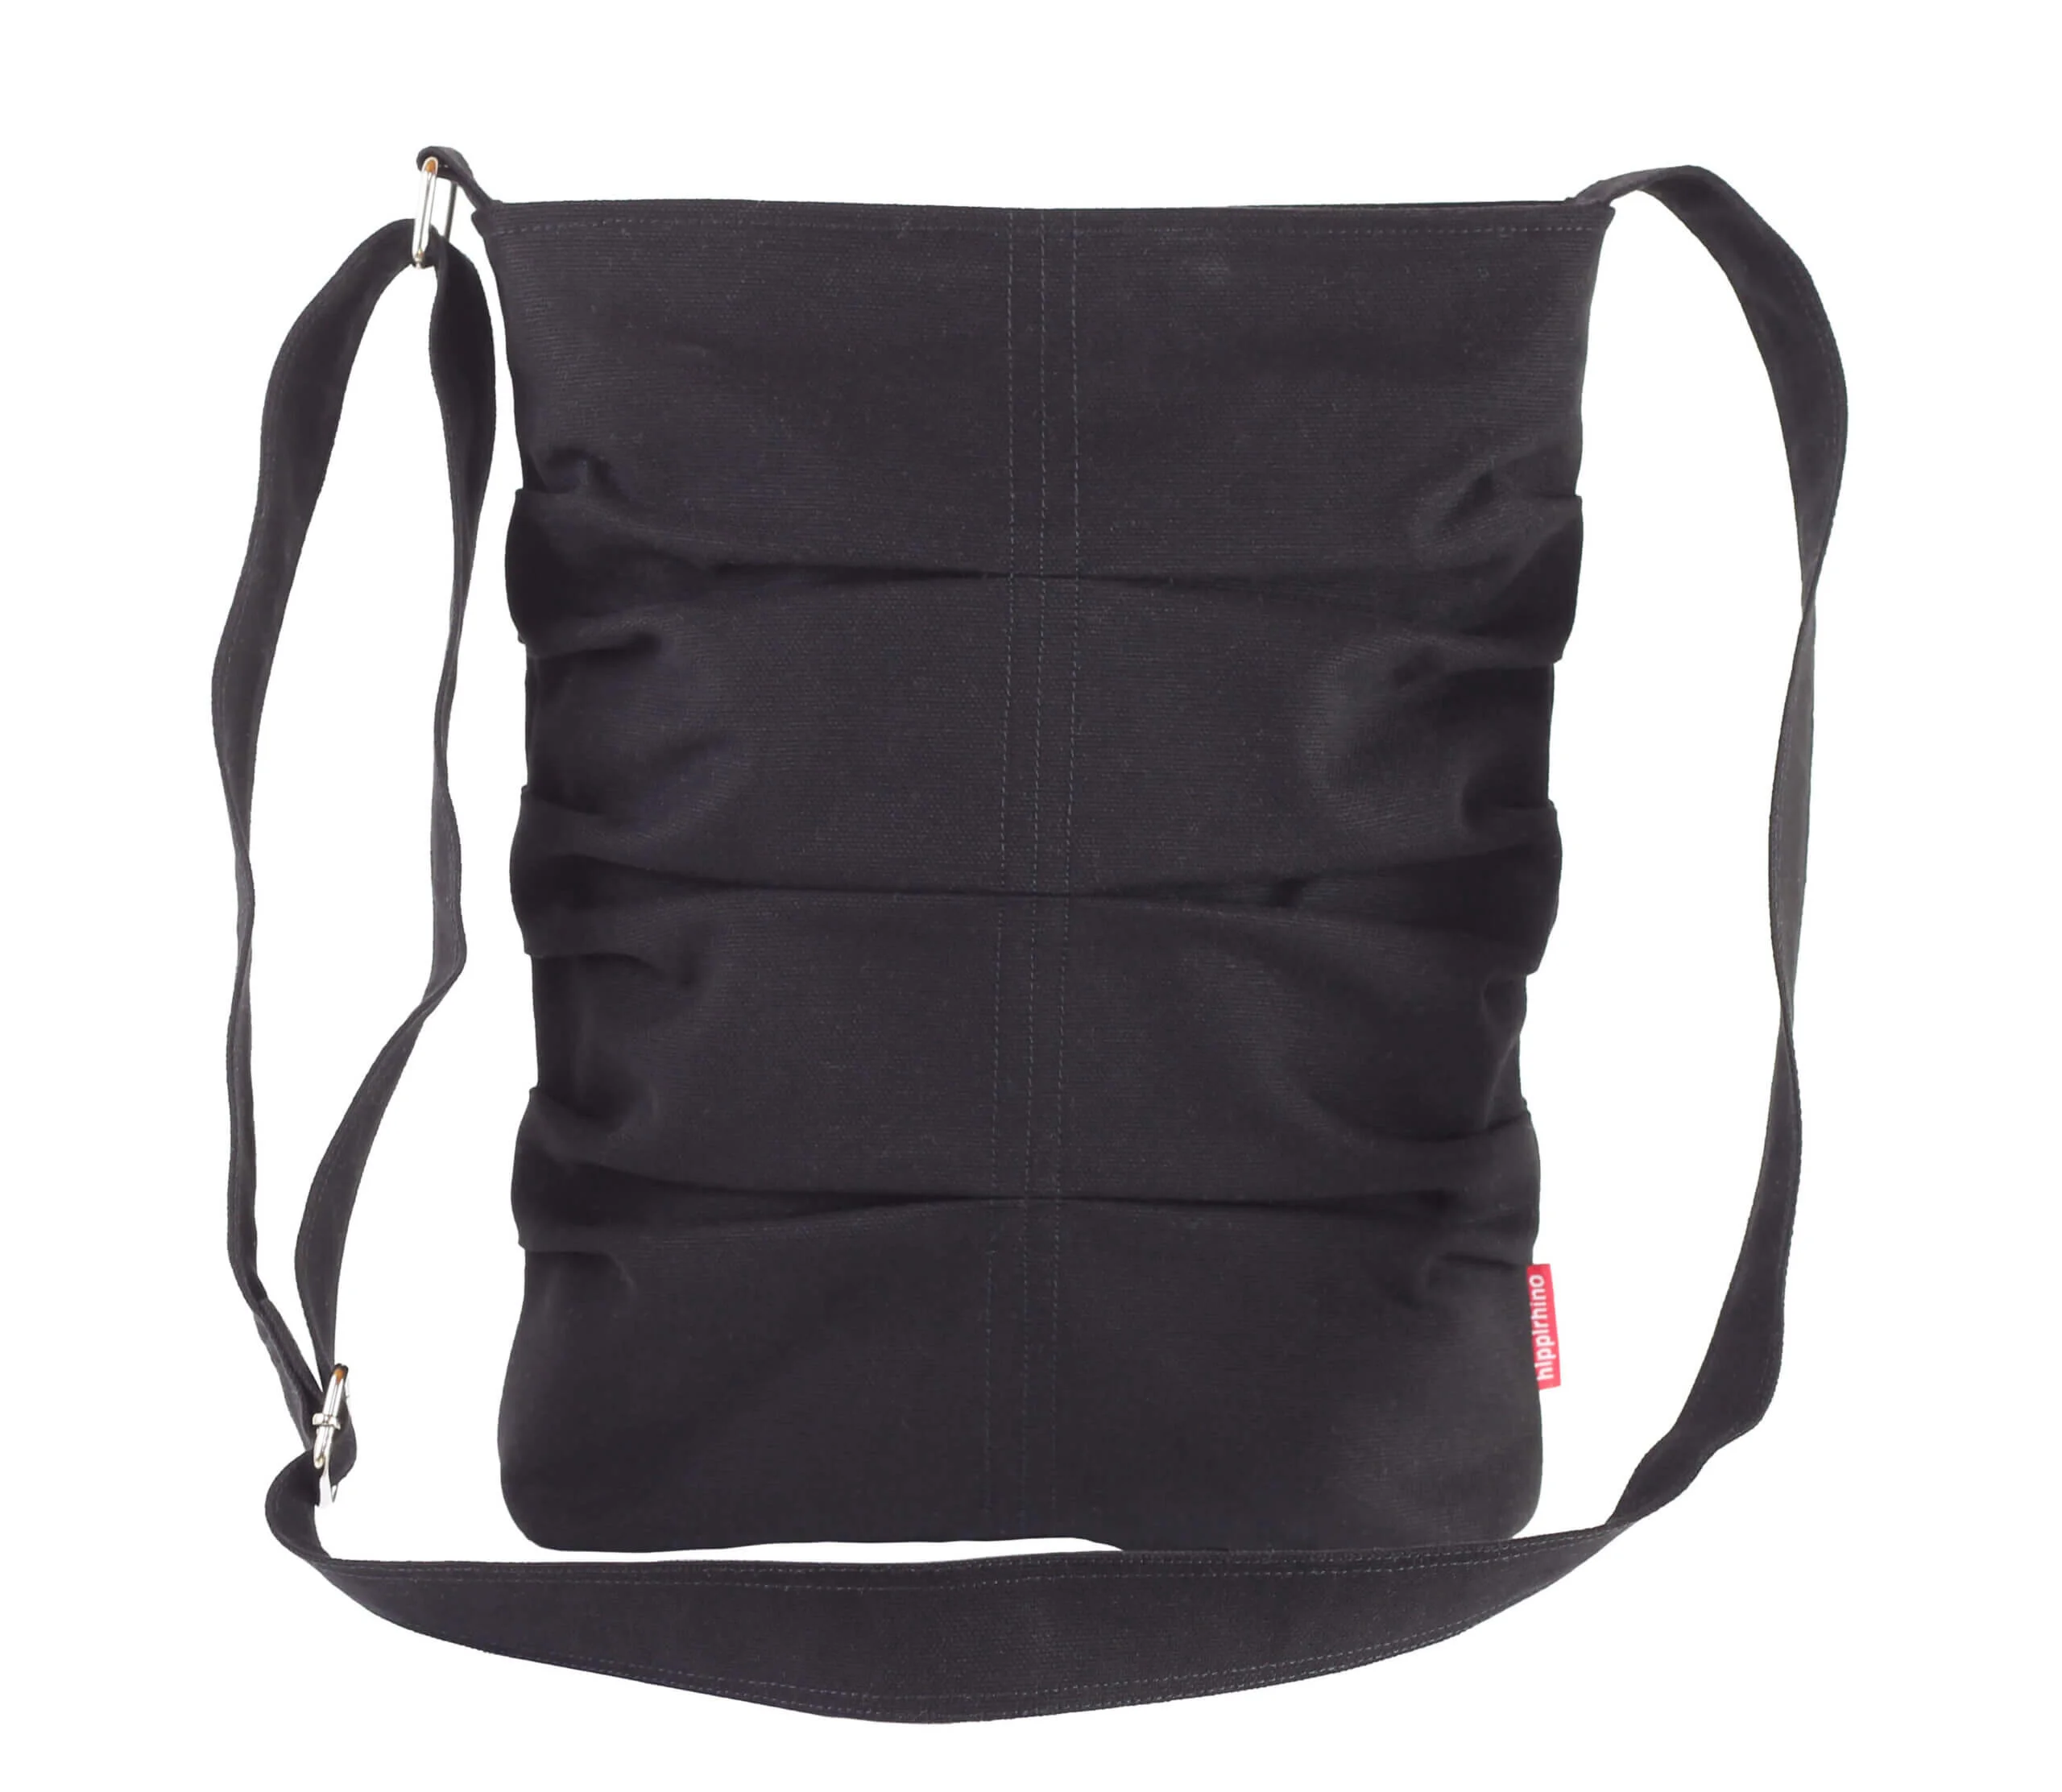 NON shopping bag made of nonwoven fabric, black | Promolog